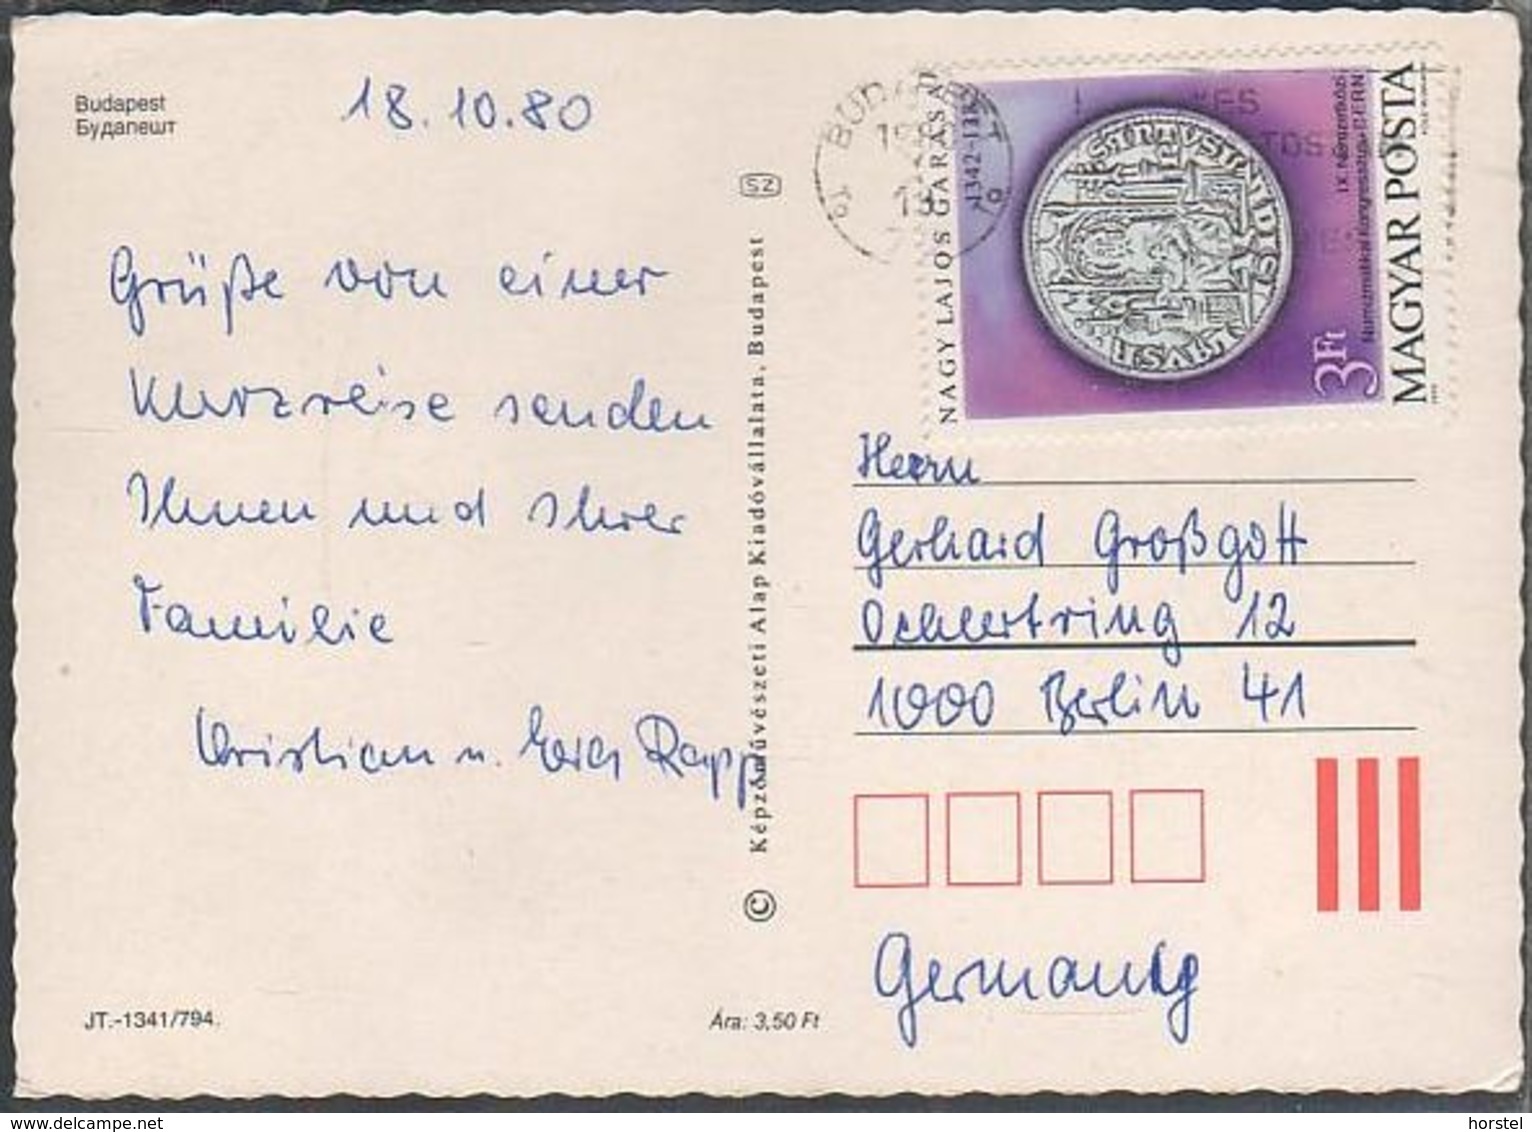 Ungarn - Budapest - Pictures - Lastkahn - Nice Stamp "coin" - Ungheria